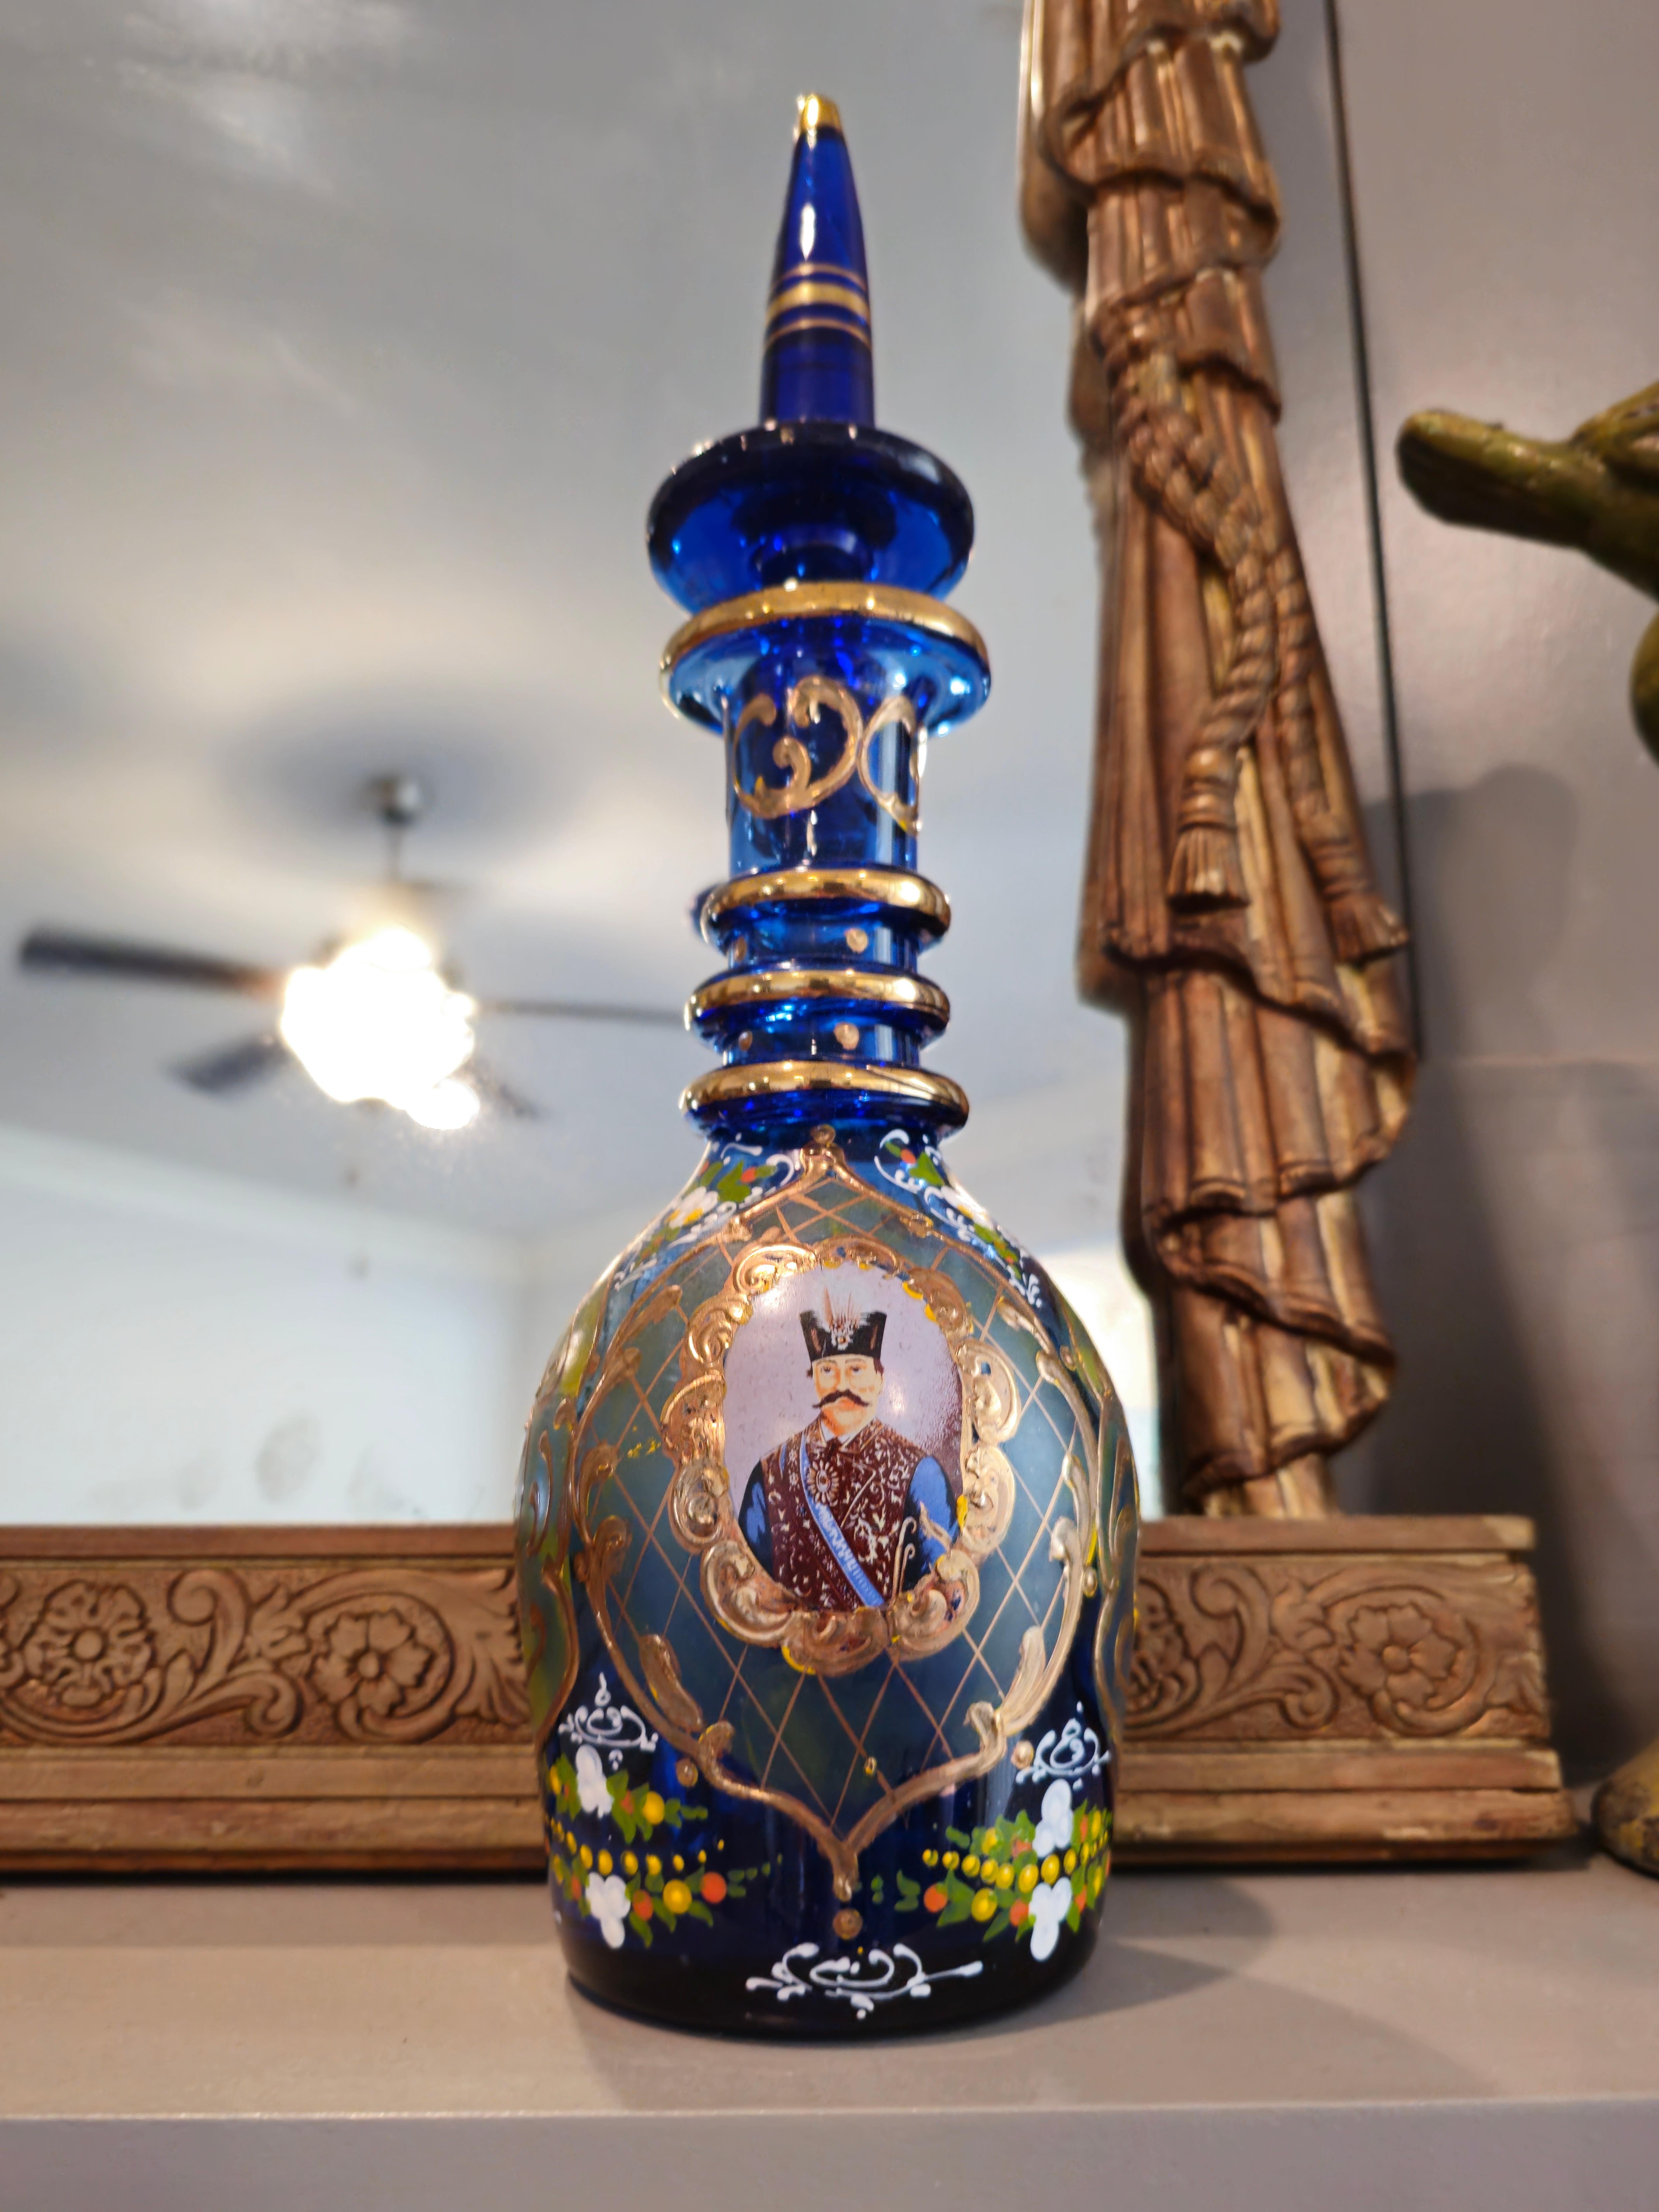 Rare paire de carafes à décanter en verre bleu cobalt clair, émaillées et dorées, d'époque Bohème, d'une qualité exceptionnelle, décorées de manière exquise pour le marché persan. circa 1890.

Fabriquées à la main à la fin du XIXe siècle en Bohemia